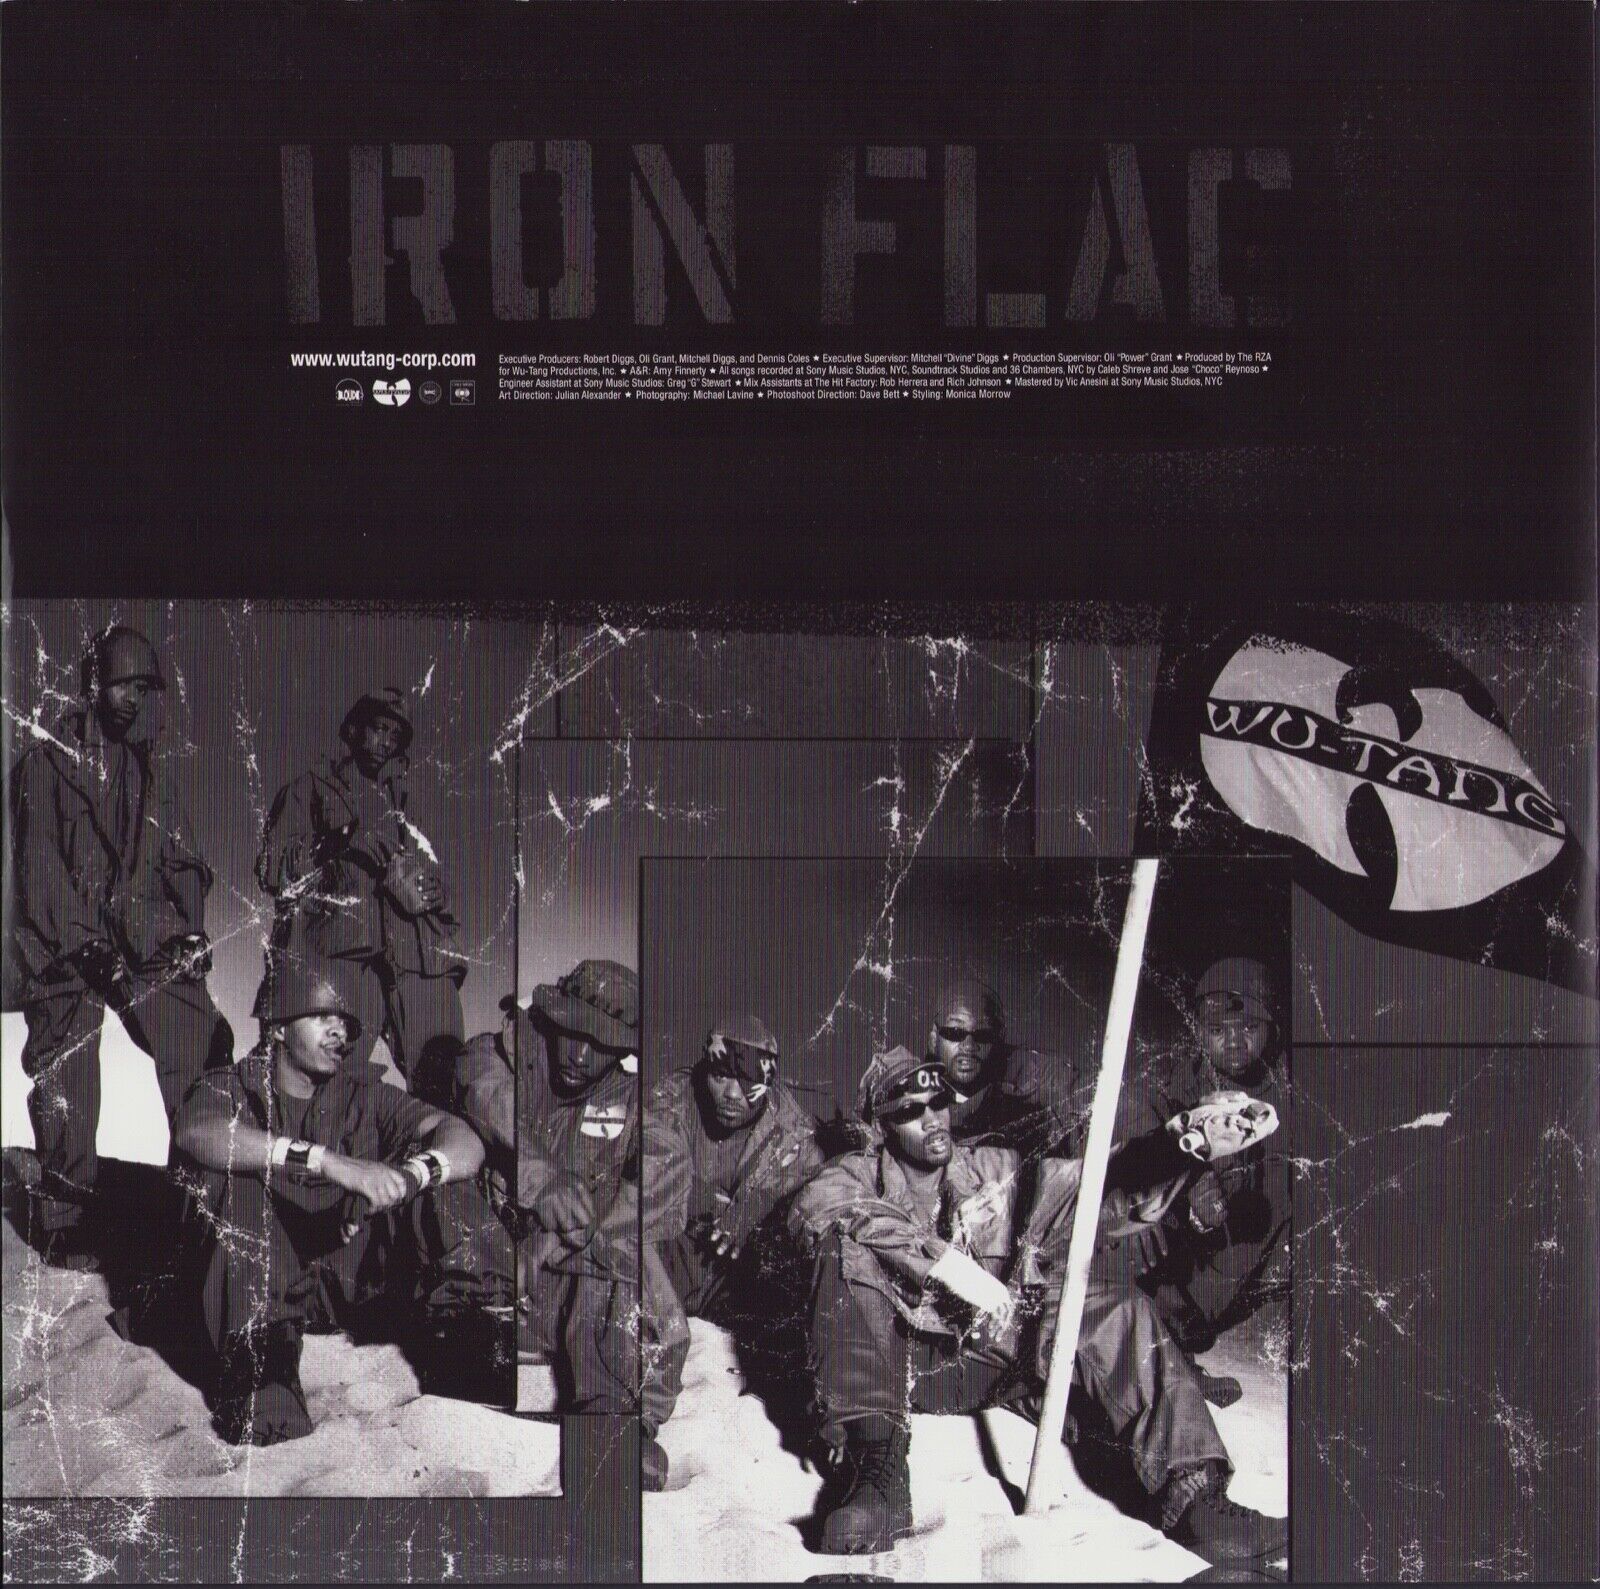 Wu-Tang Clan ‎- Iron Flag (Vinyl 2LP)